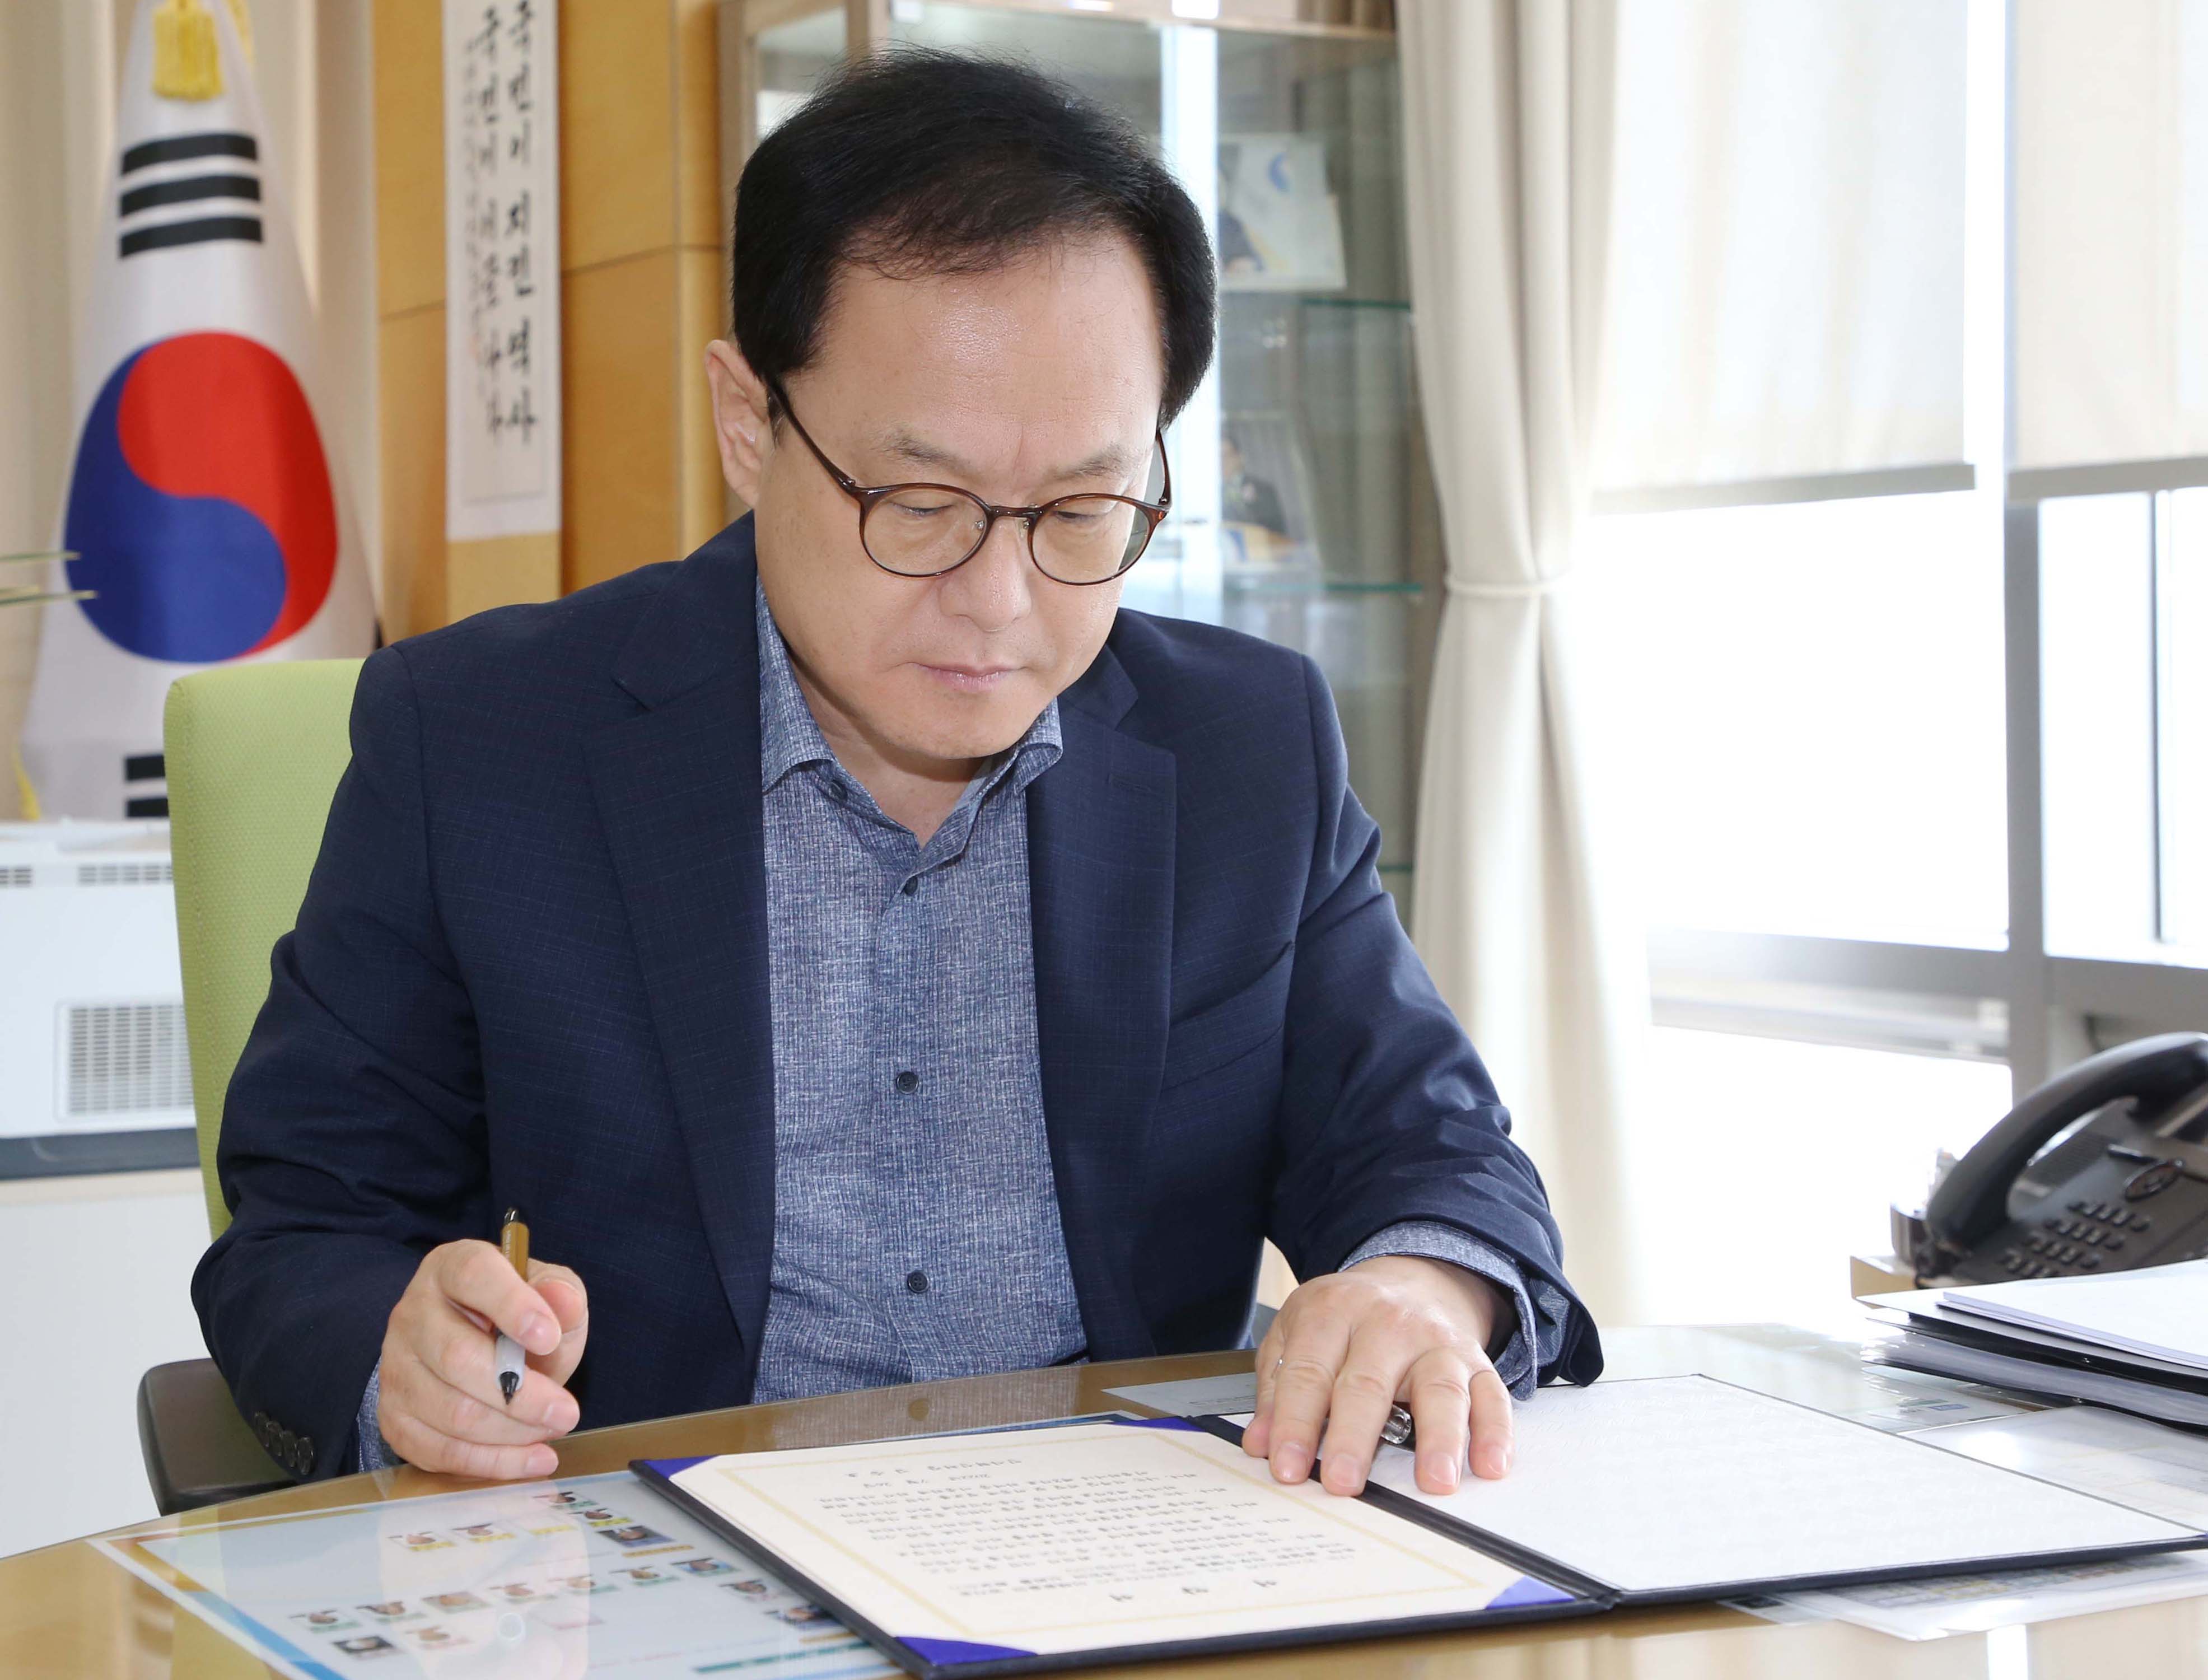 26일 세종시 인사혁신처에서 김승호 인사혁신처장이 이해충돌 방지제도 준수 서약서를 보고 있는 모습.